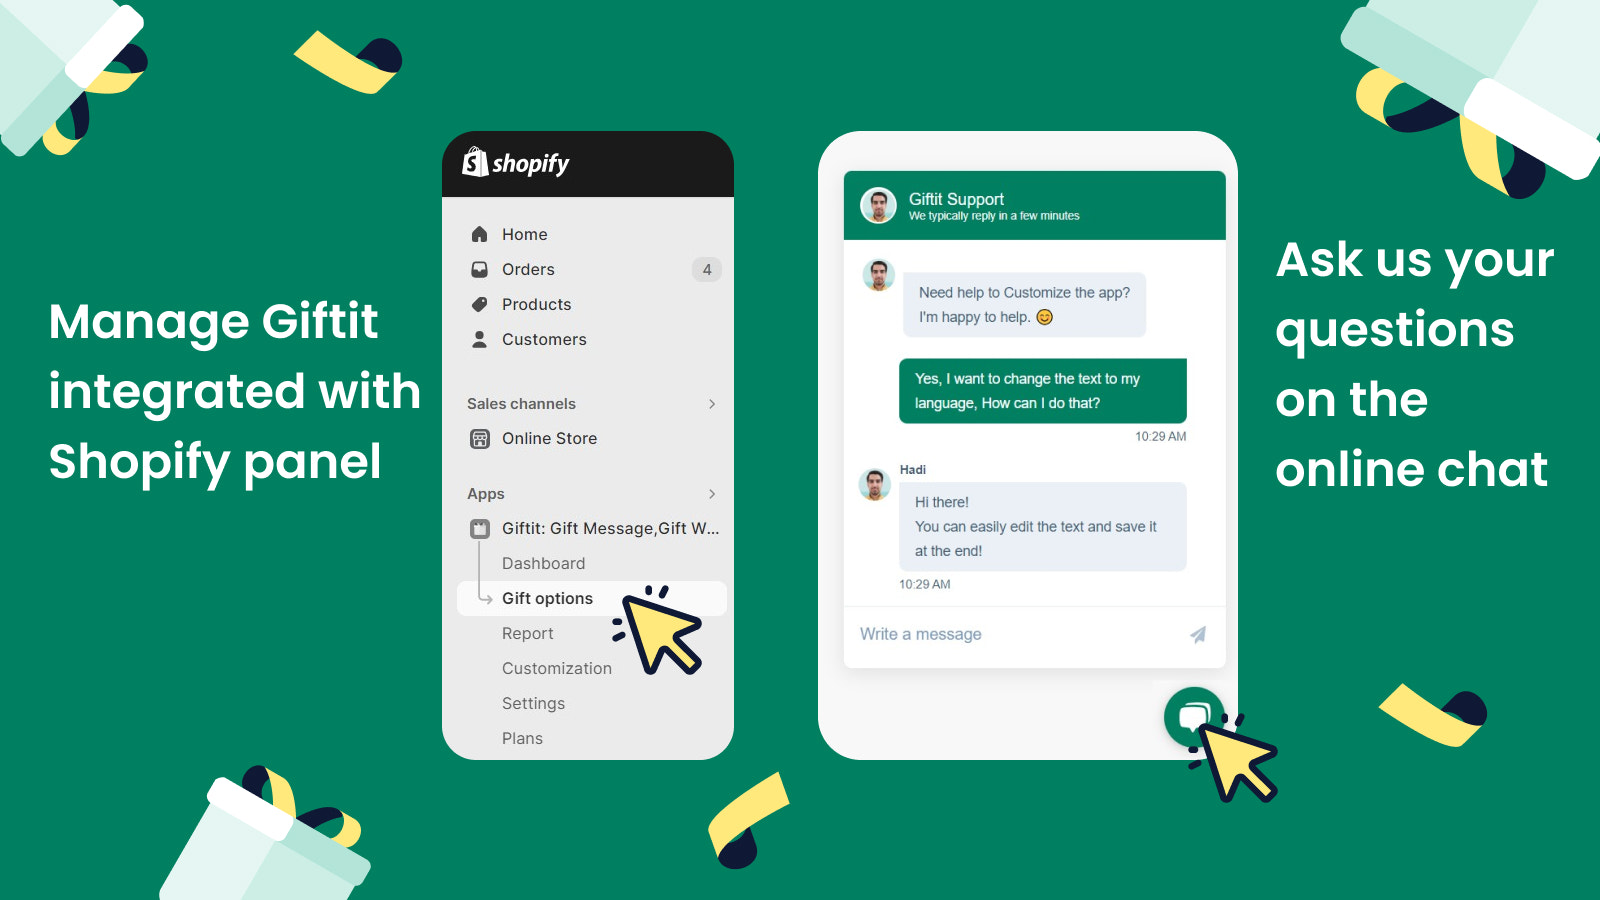 Aproveite um aplicativo integrado ao Shopify e suporte 24/7! 